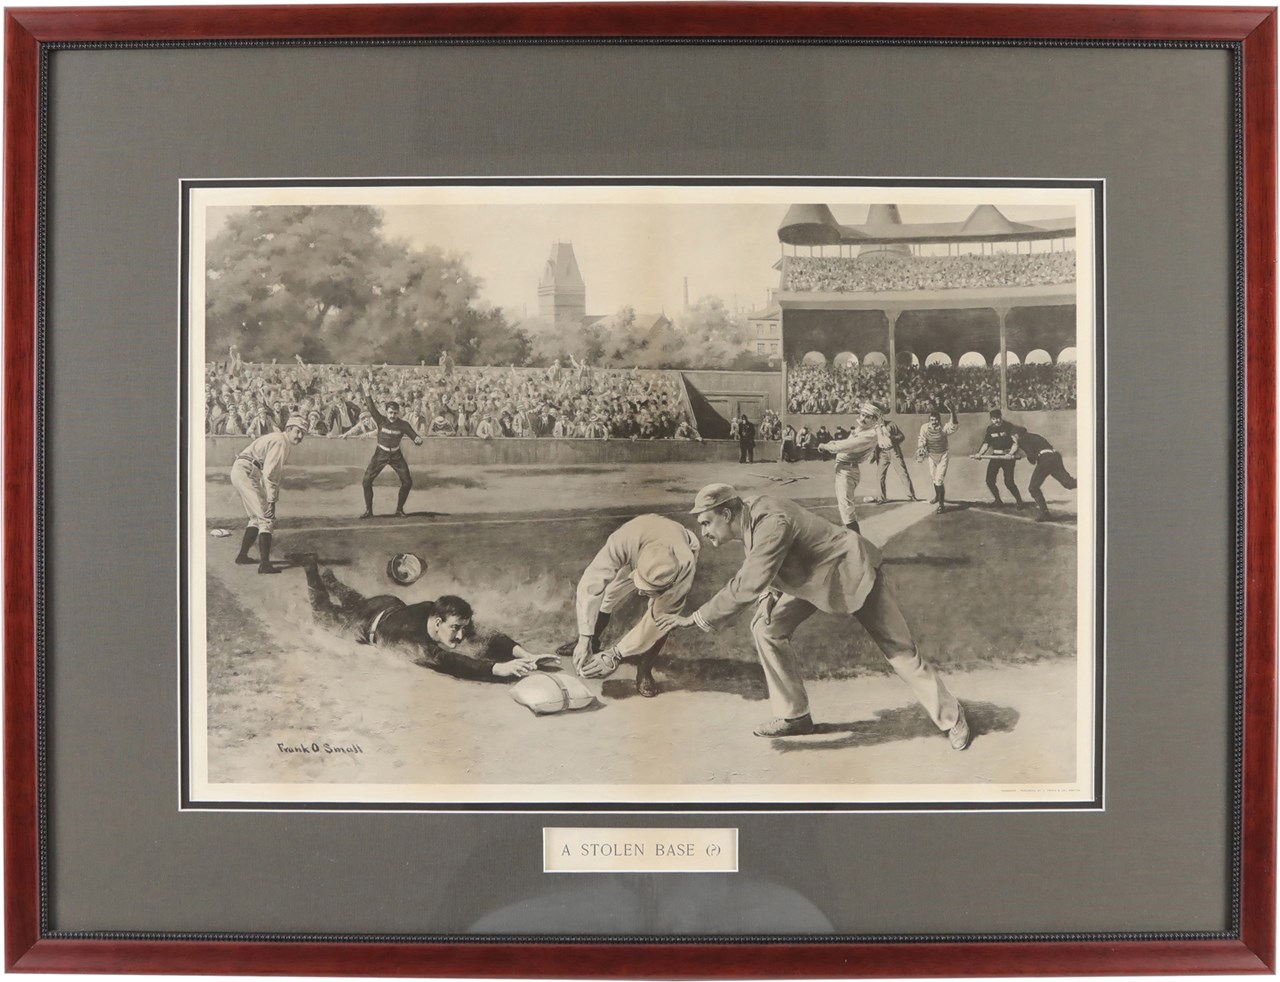 Circa 1890 Prang Baseball Lithograph - "A Stolen Base?"